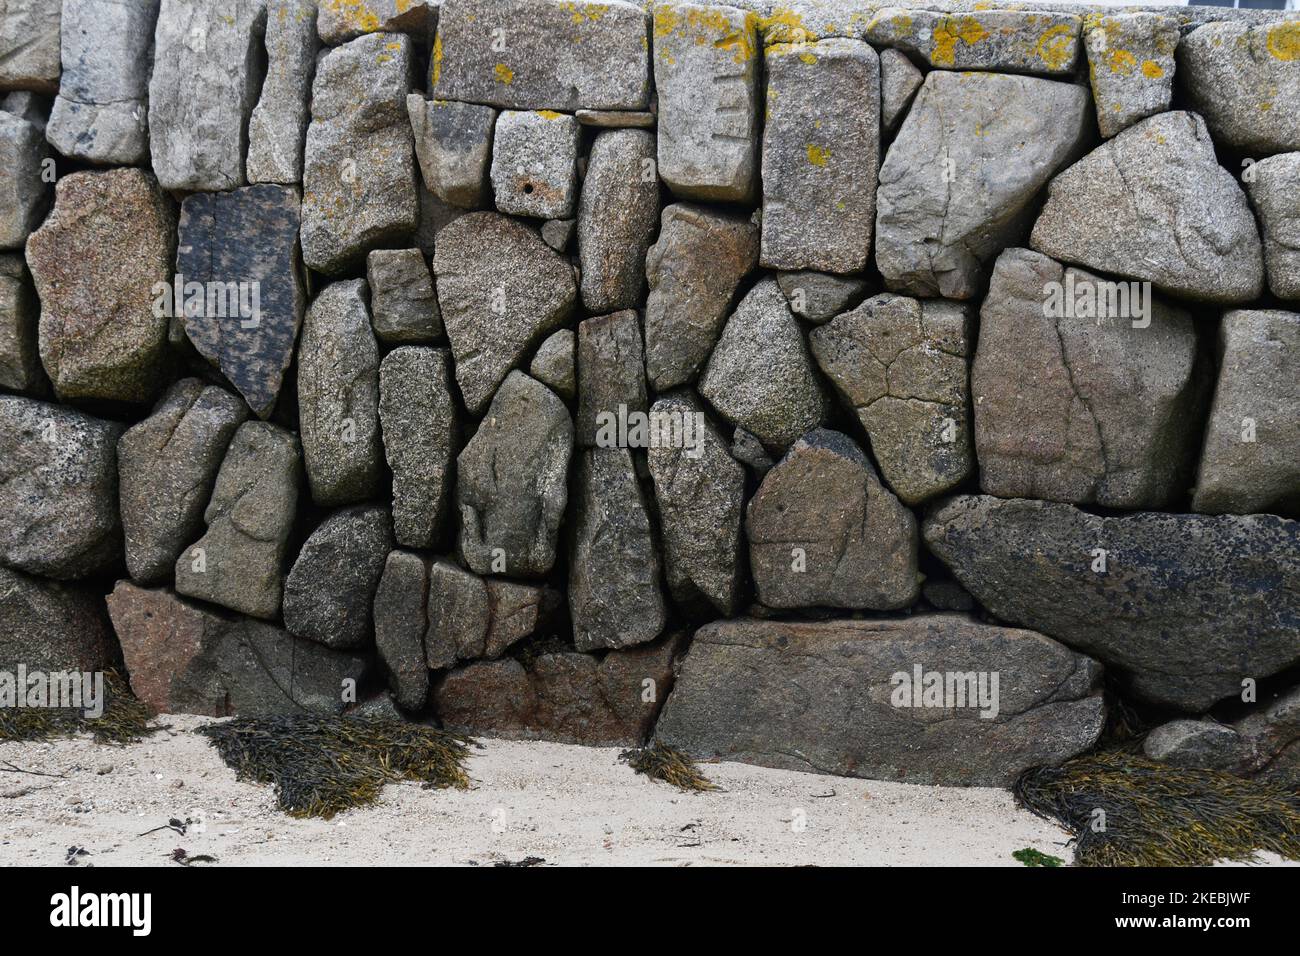 Granitblöcke bilden den Kai des Hafens in New Grimsby auf der Insel Tresco in den Isles of Scilly archepelago vor der Küste von Cornwall. Stockfoto